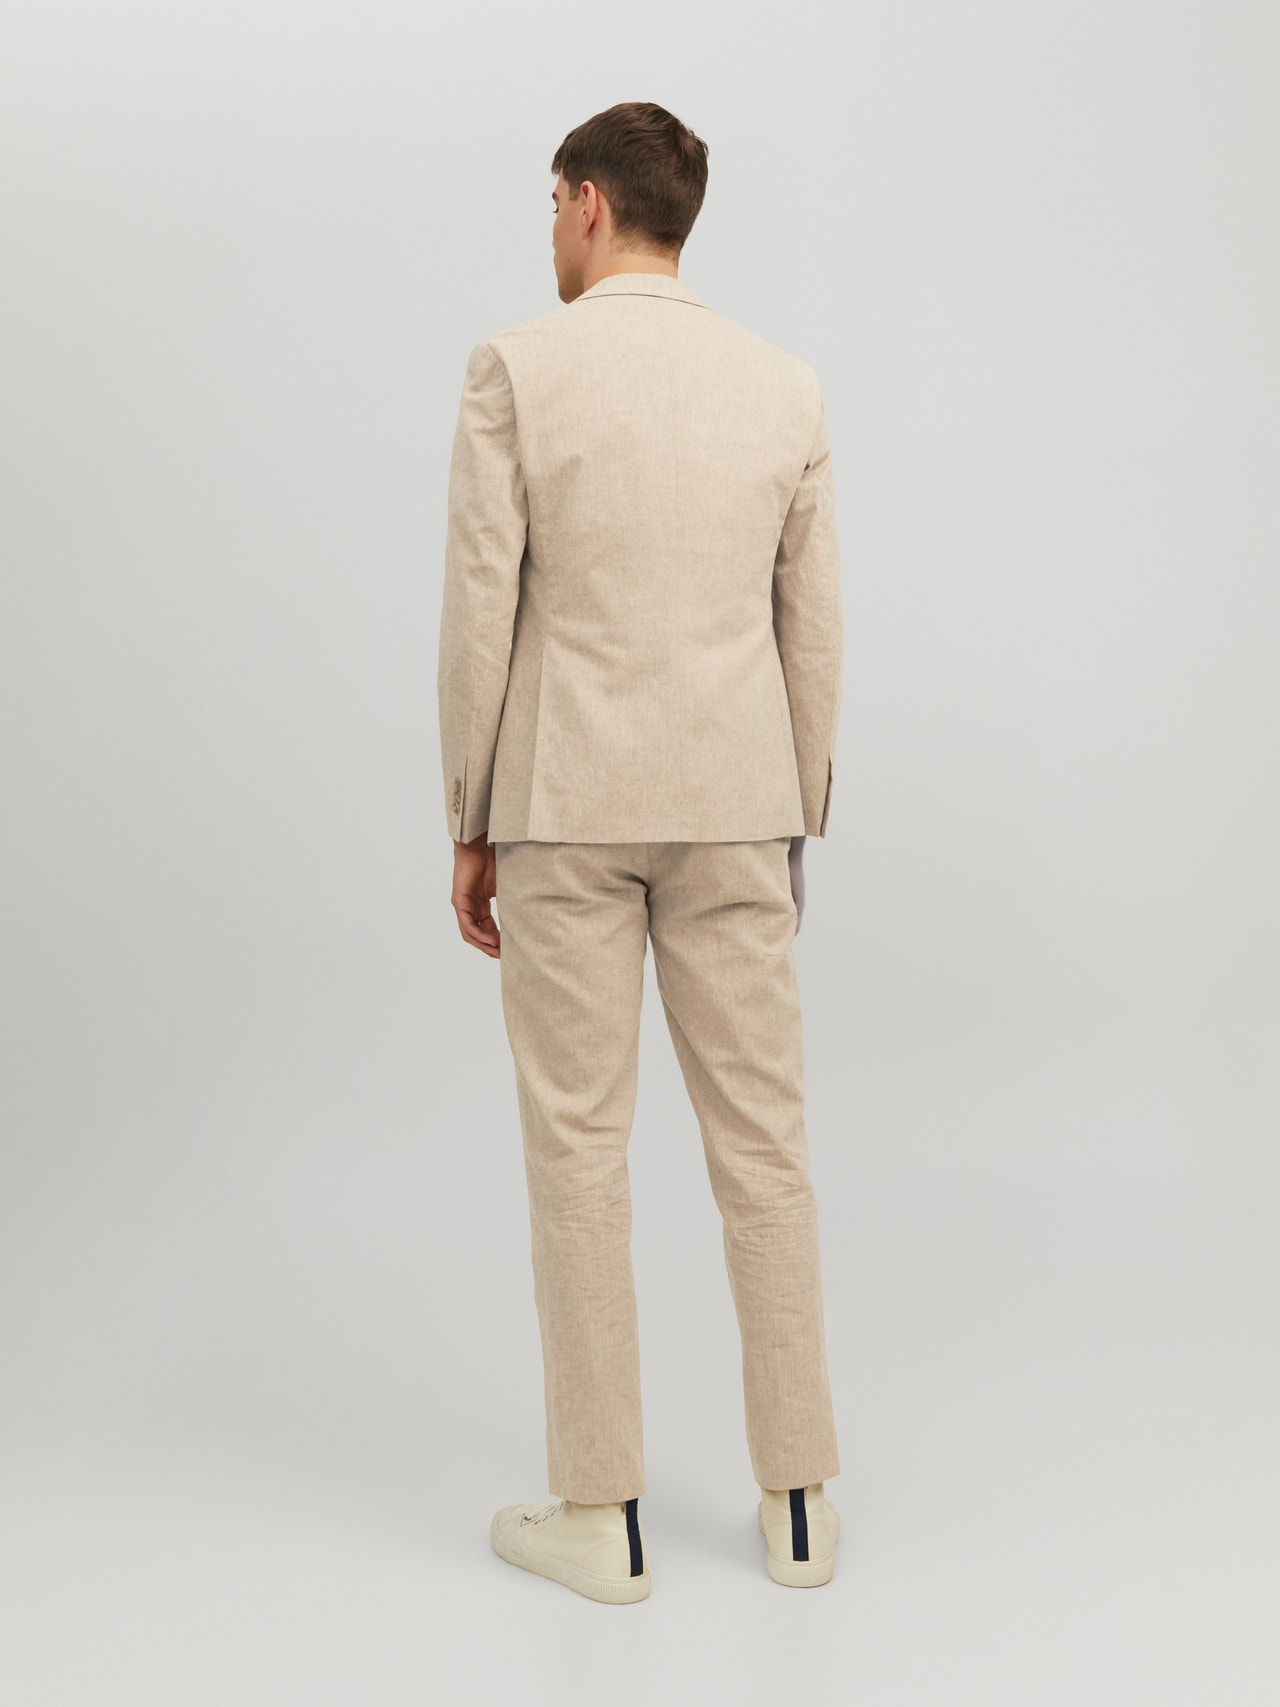 Buy Shotarr Slim Fit Beige Formal Pant for Men - Polyester Viscose